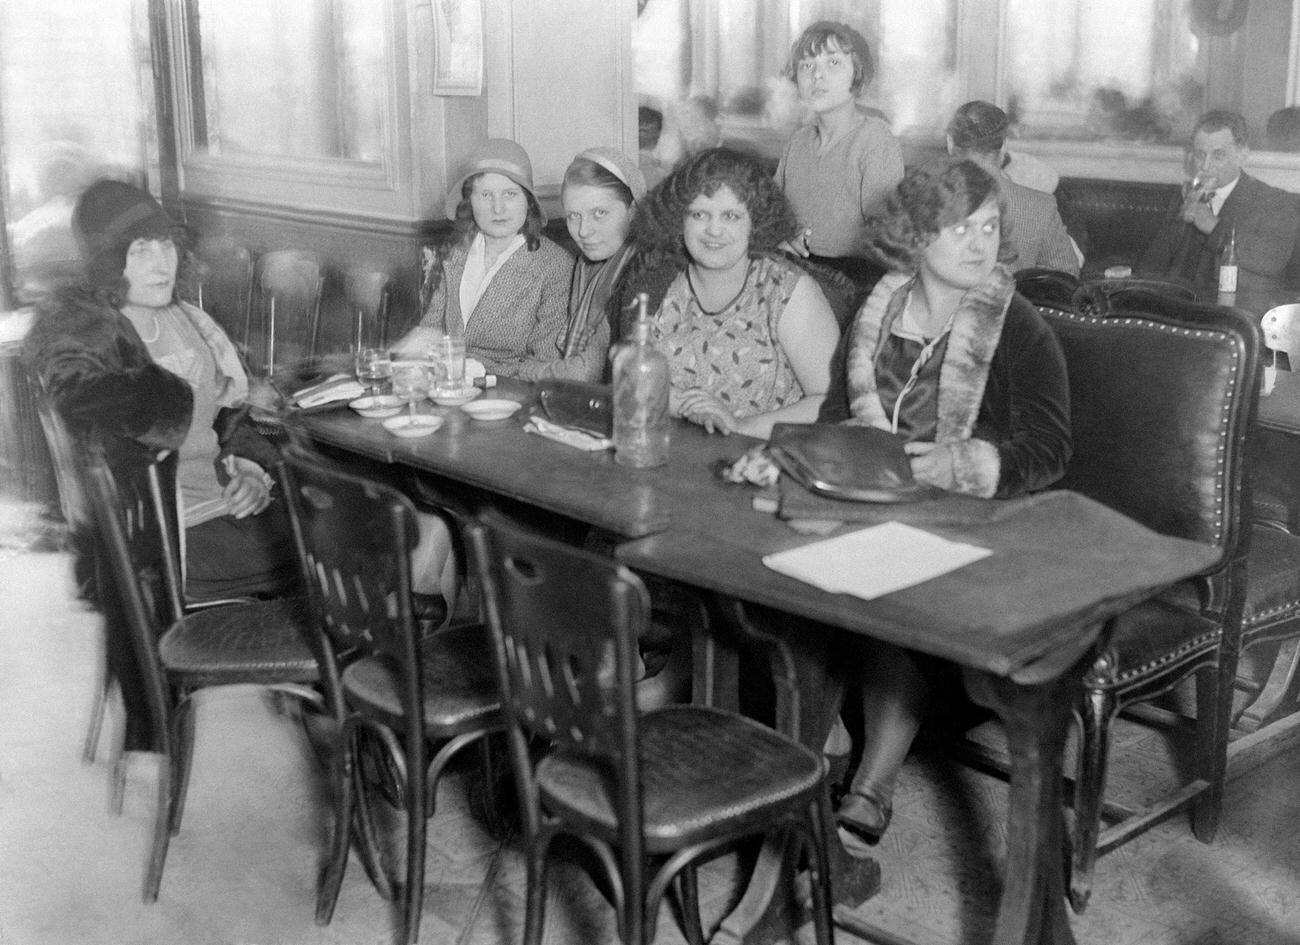 Patrons at Café-Bar Léon, Paris, 1930